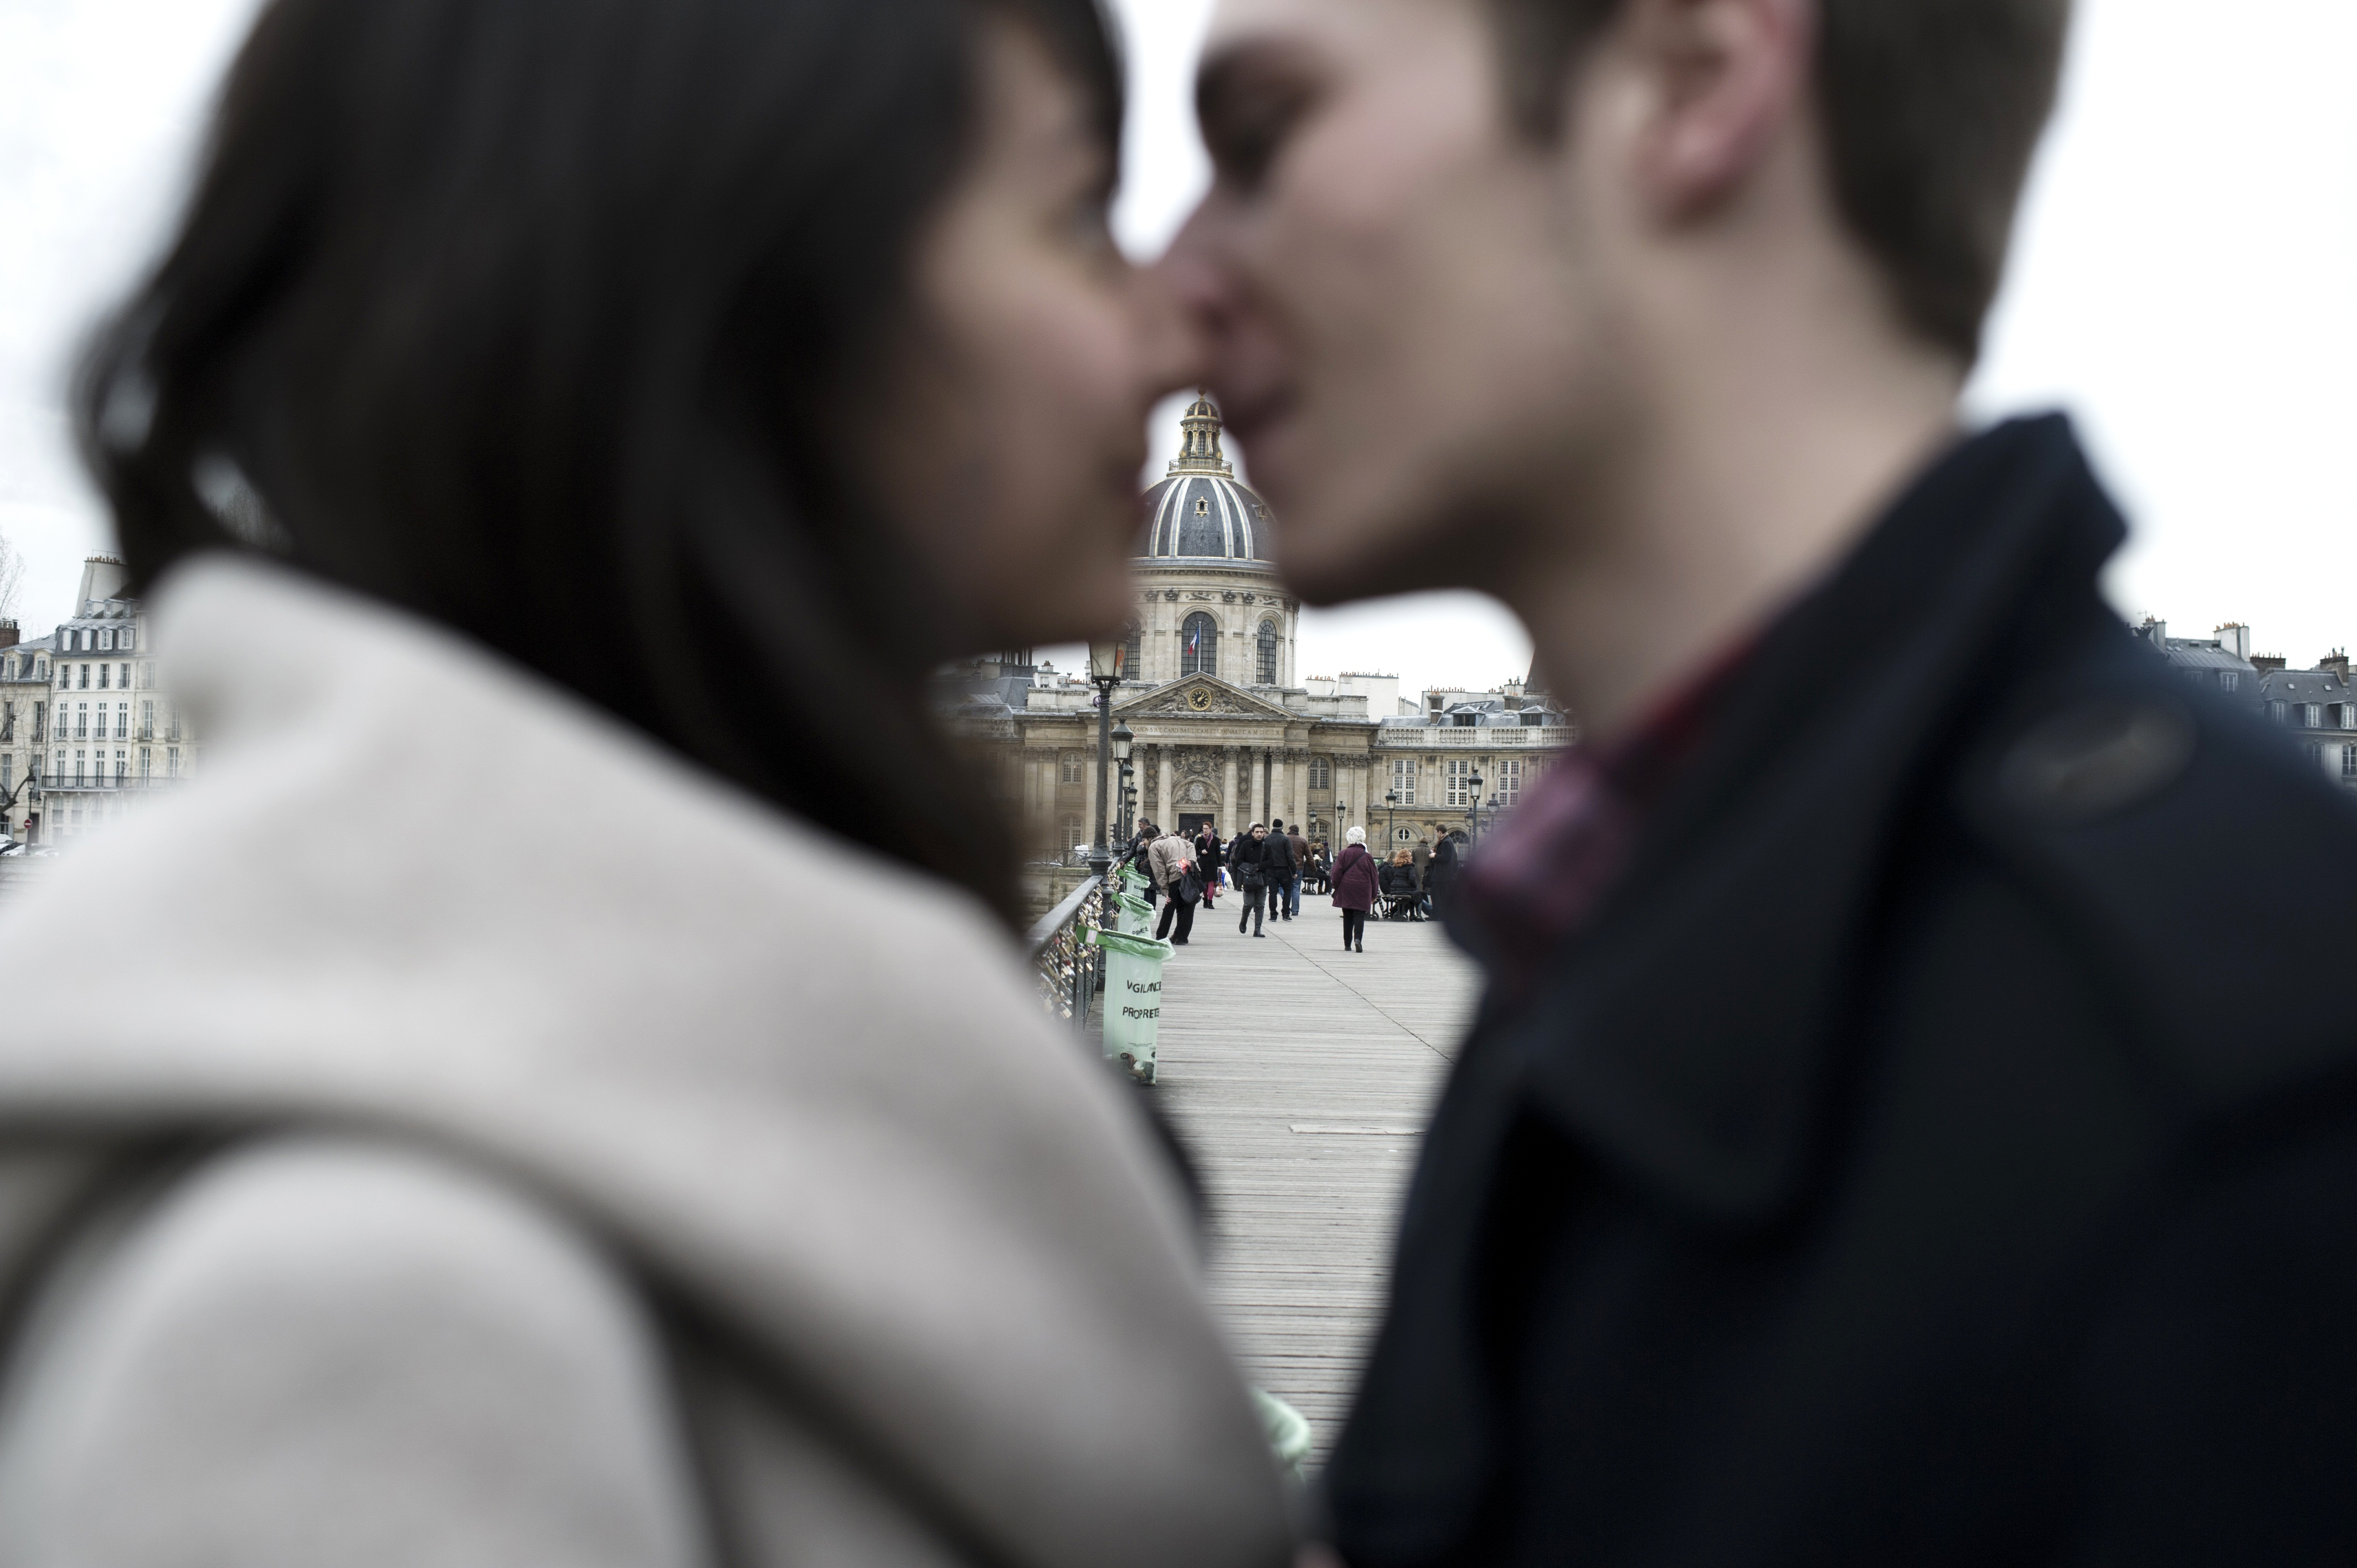 Страстный французский. Фотография пары во время демонстрации. France for Romance.